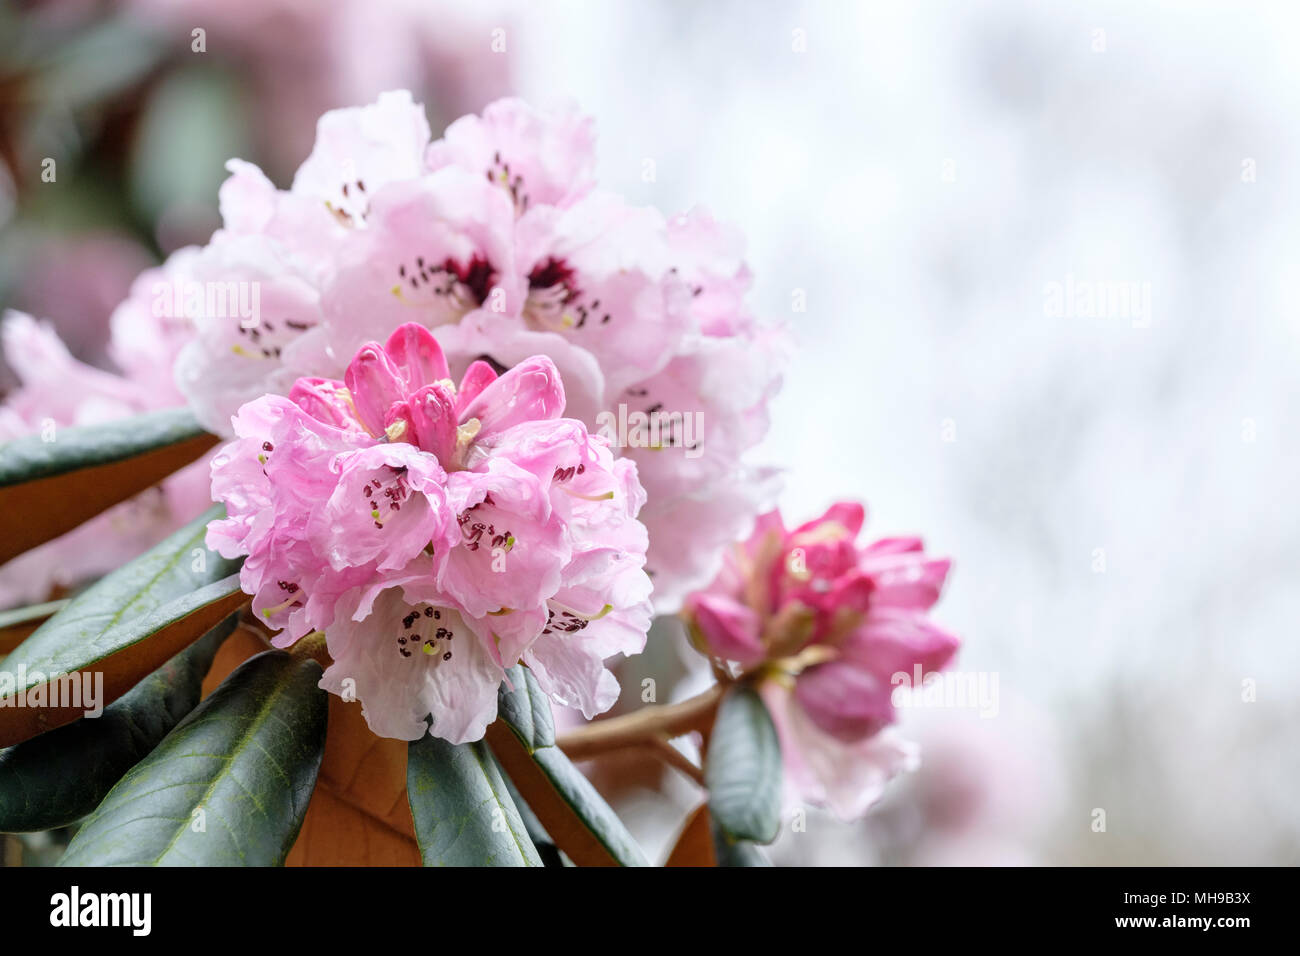 Zimt - farbige Rhododendron, Rhododendron fulvum (Sichel - Kapsel Rhododendron) Blumen, Blüten, April. Stockfoto